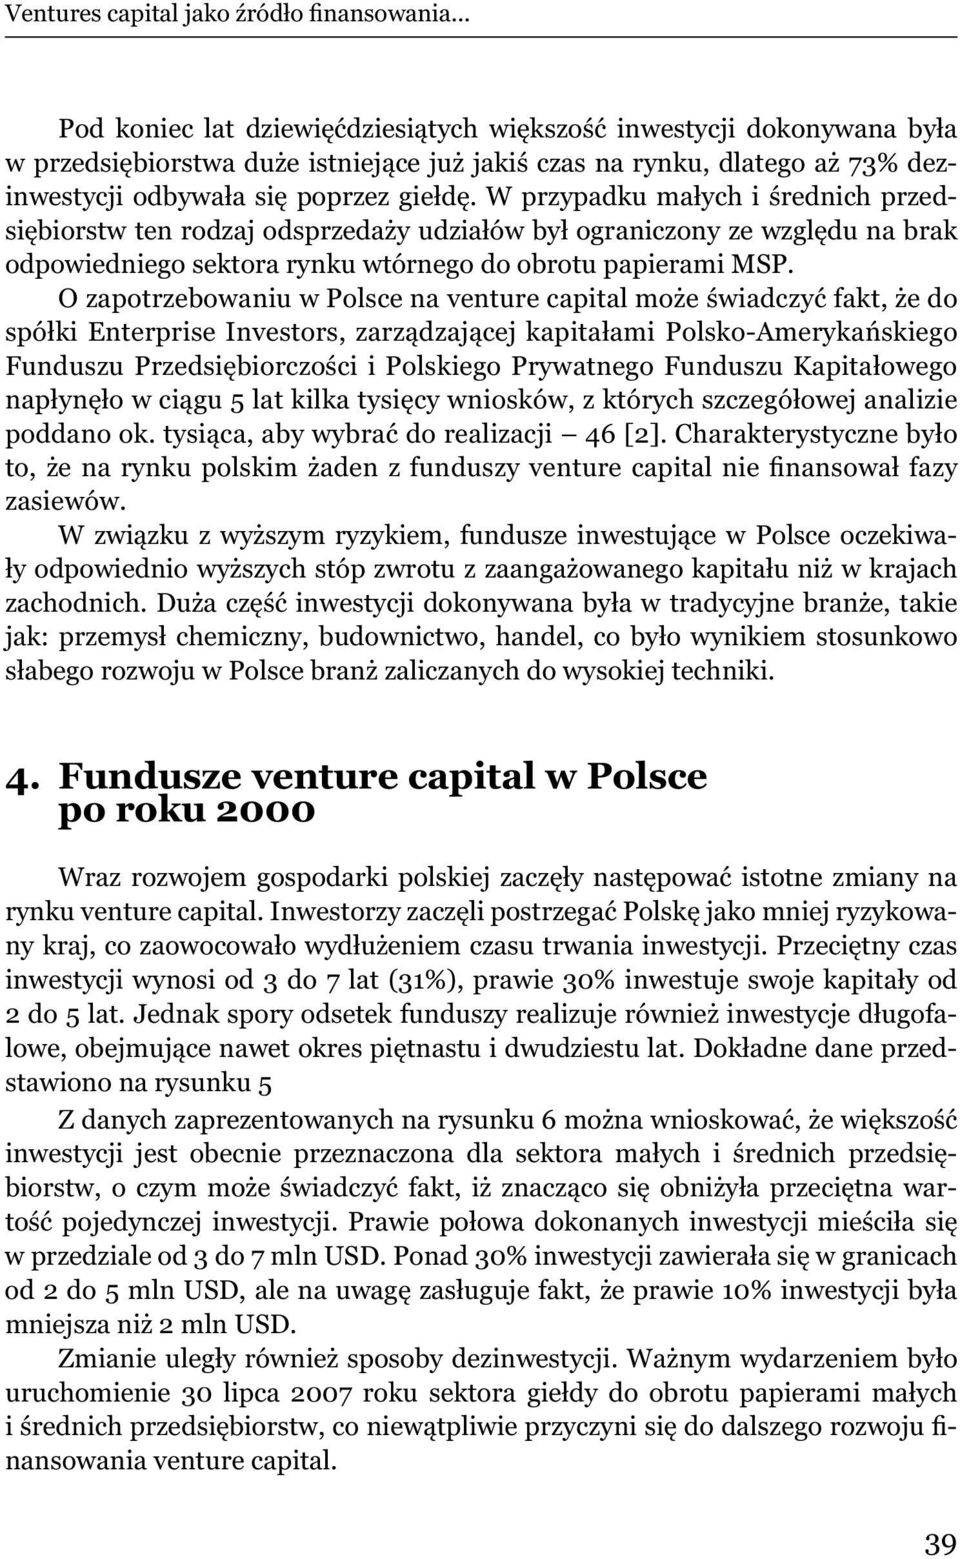 O zapotrzebowaniu w Polsce na venture capital mo e wiadczy fakt, e do spó ki Enterprise Investors, zarz dzaj cej kapita ami Polsko-Ameryka skiego Funduszu Przedsi biorczo ci i Polskiego Prywatnego